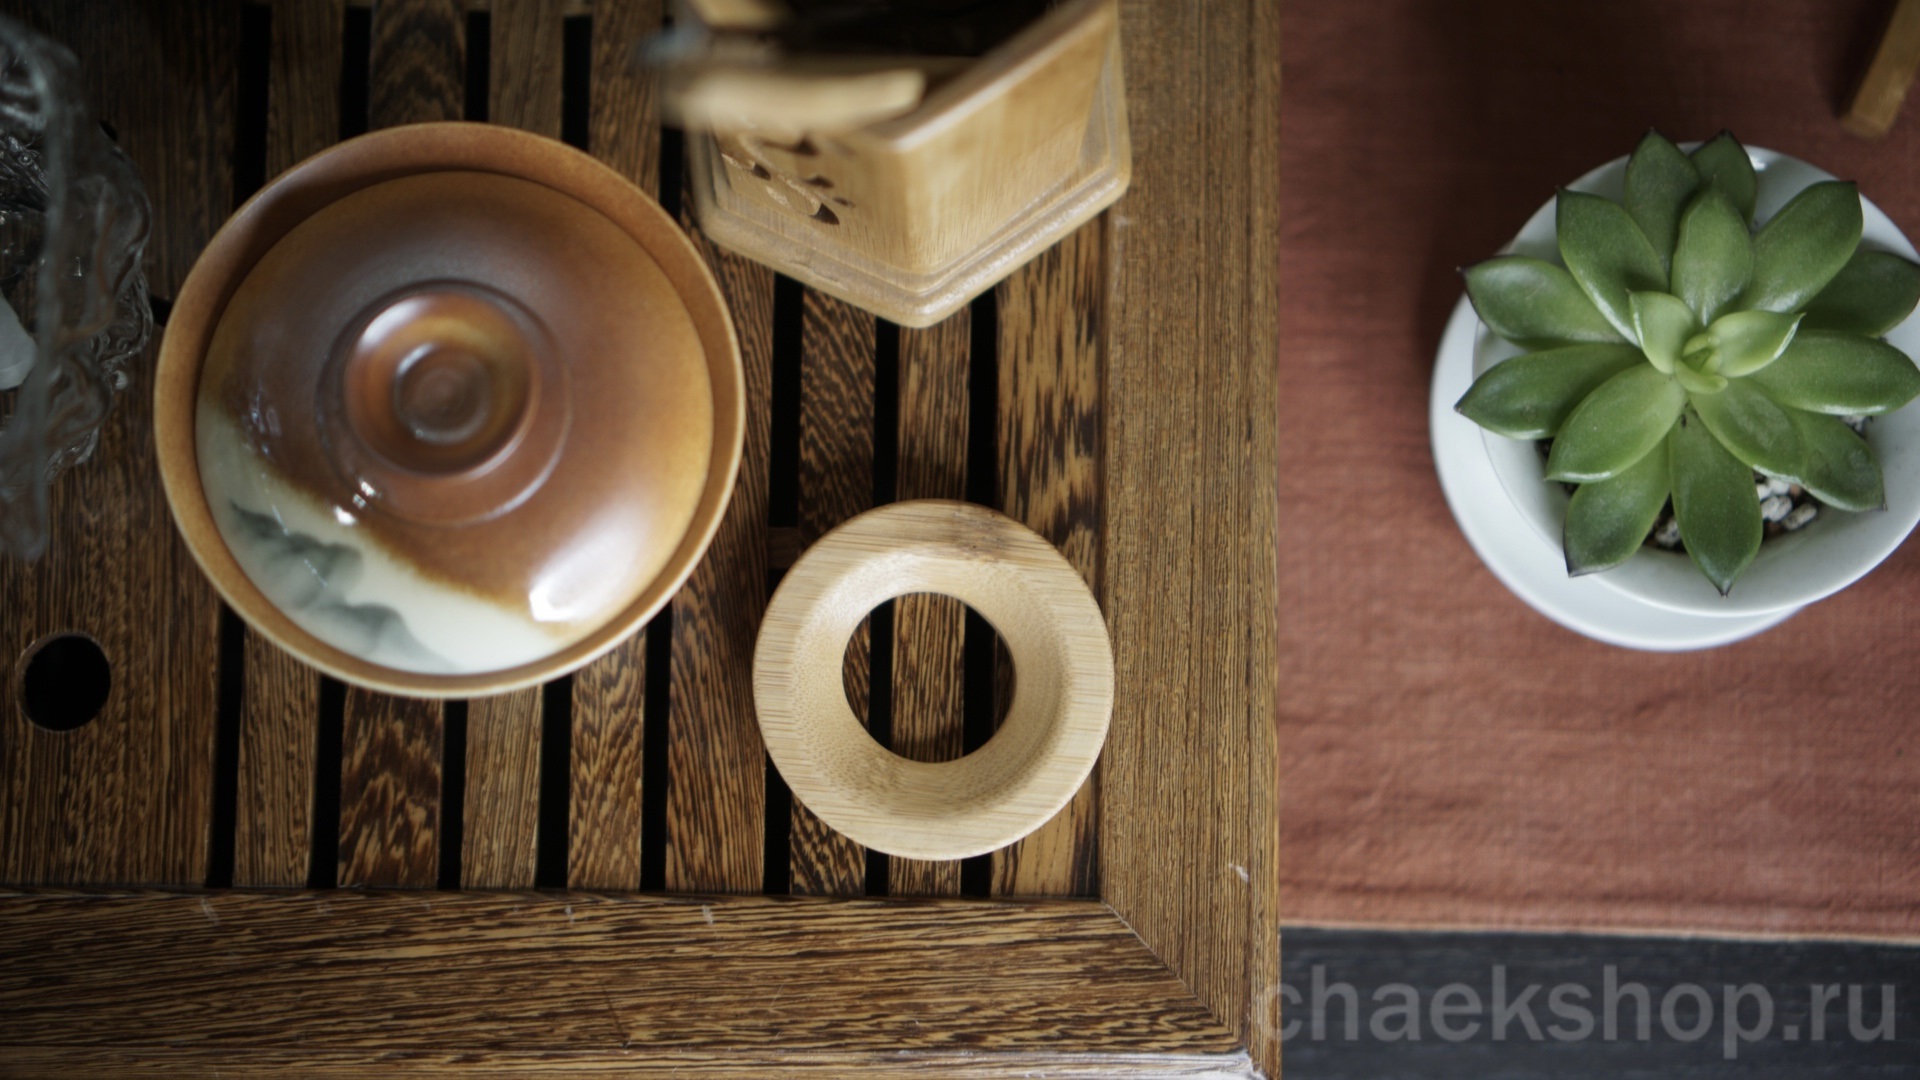   Воронка (чалоу 茶漏 chálòu) - помогает удобно засыпать чай в чайник с узким горлышком